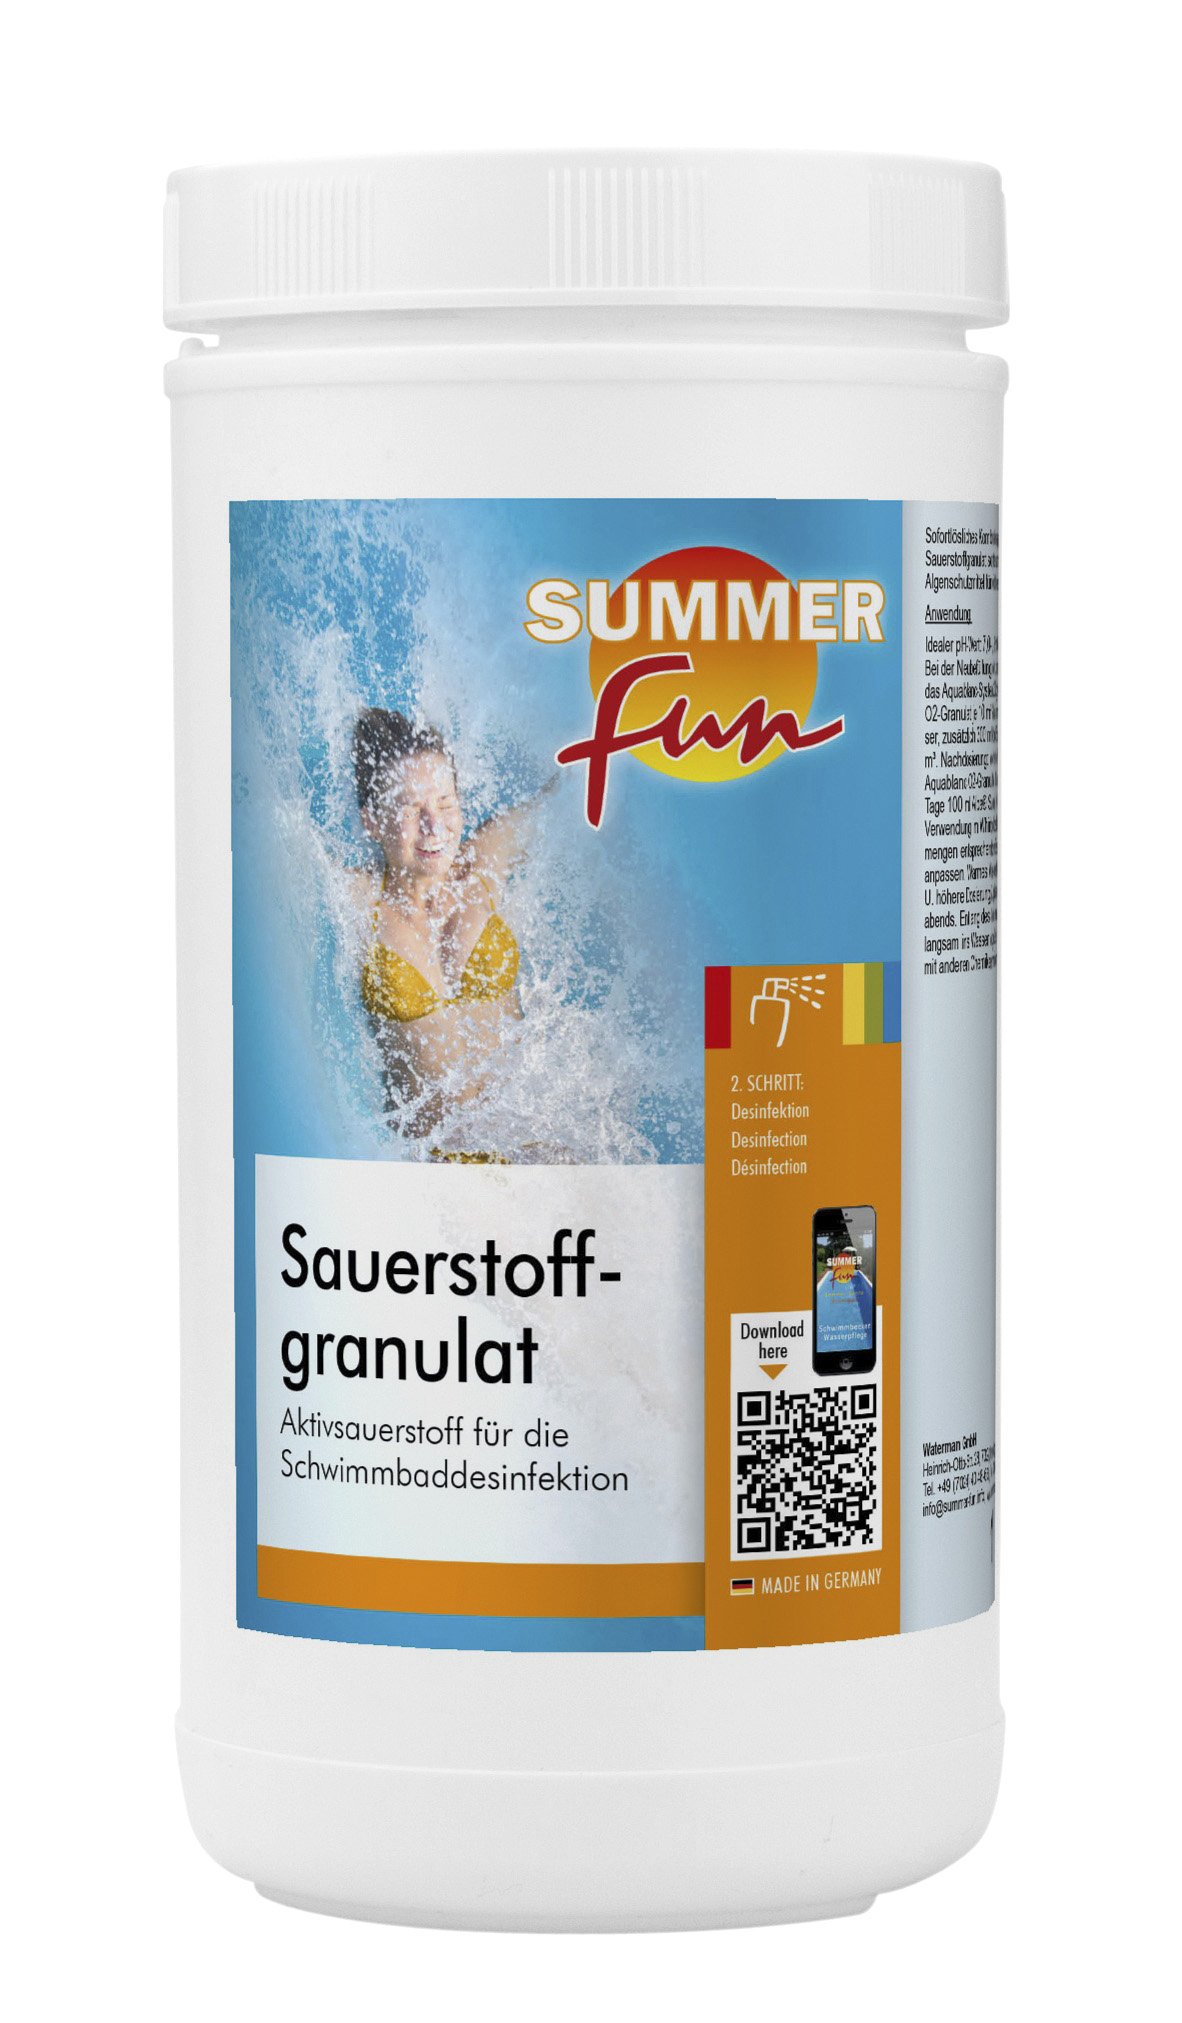 Summer Fun - Sauerstoffgranulat, 1 kg